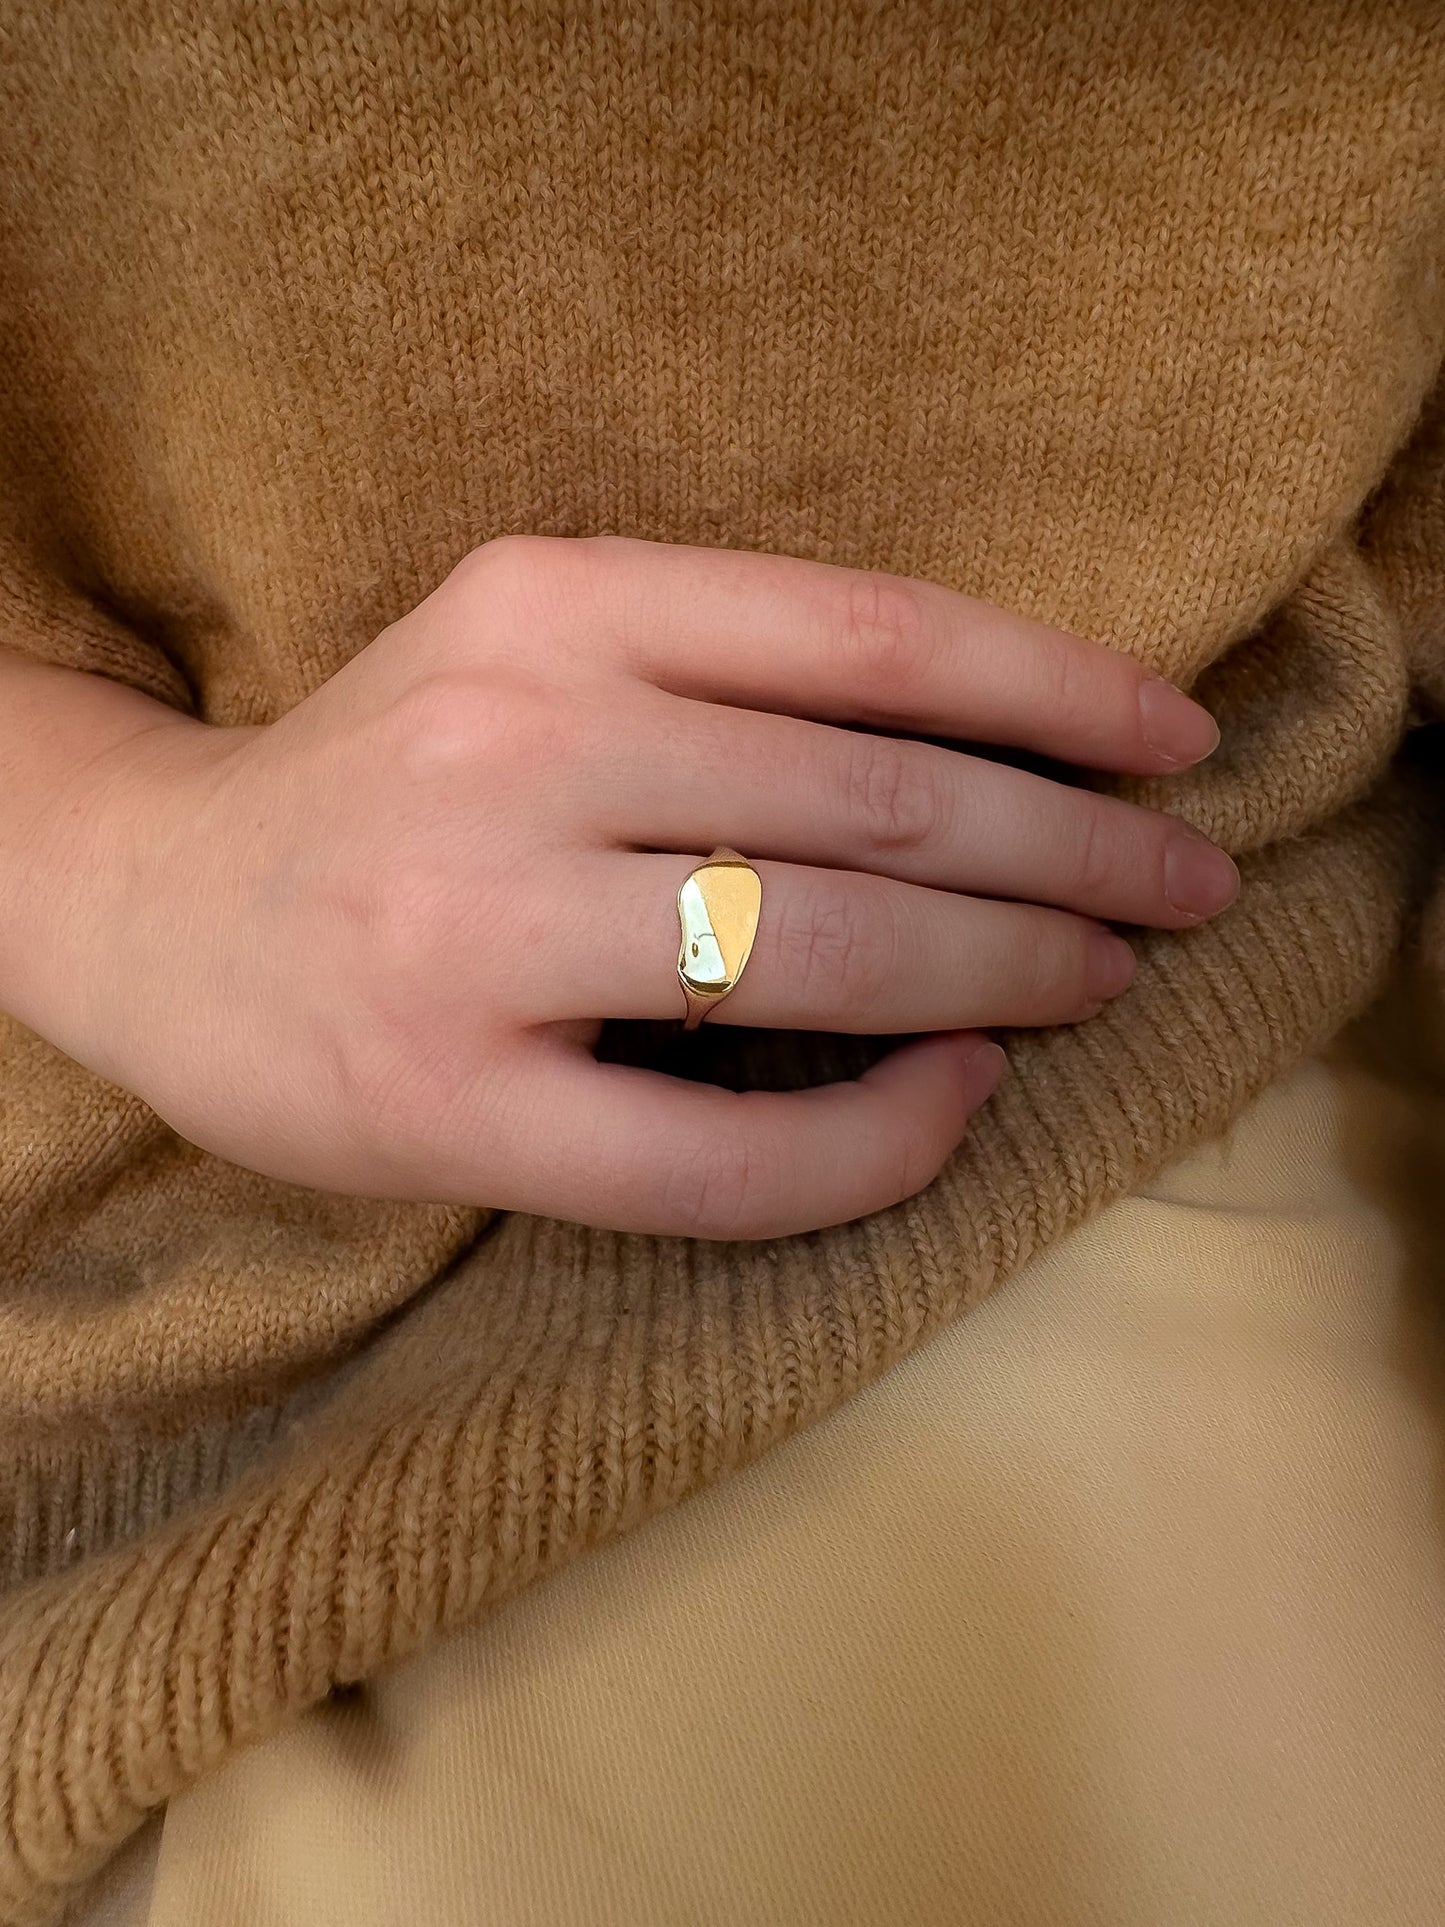 Gold Bean Signet Ring